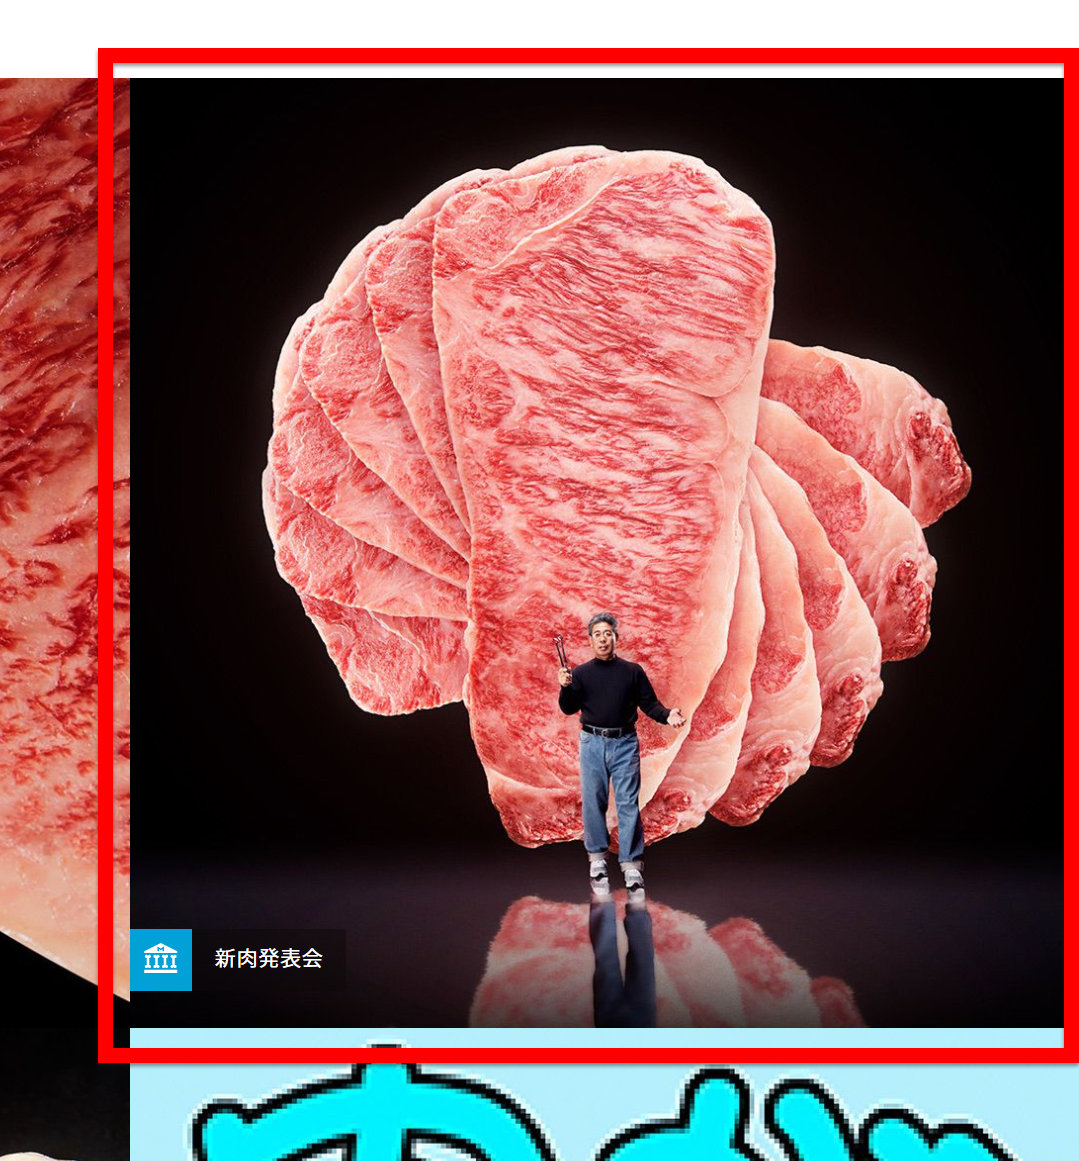 無料 商用利用も可能なお肉のフリー素材サイト Oniku Images が斜め上の完成度 Gigazine